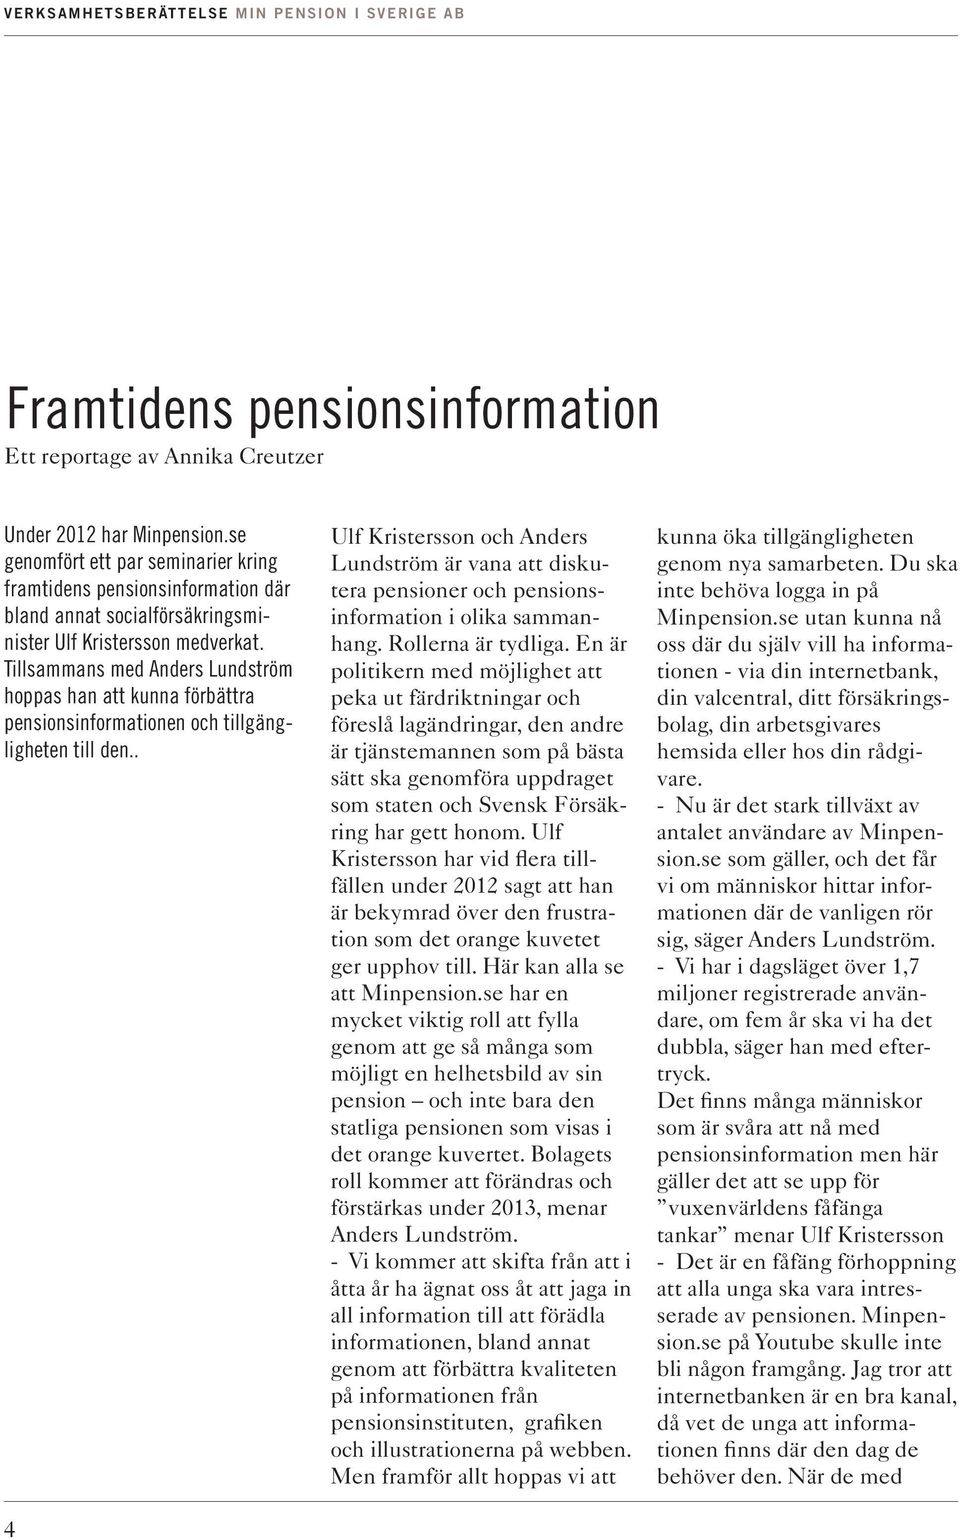 Tillsammans med Anders Lundström hoppas han att kunna förbättra pensionsinformationen och tillgängligheten till den.